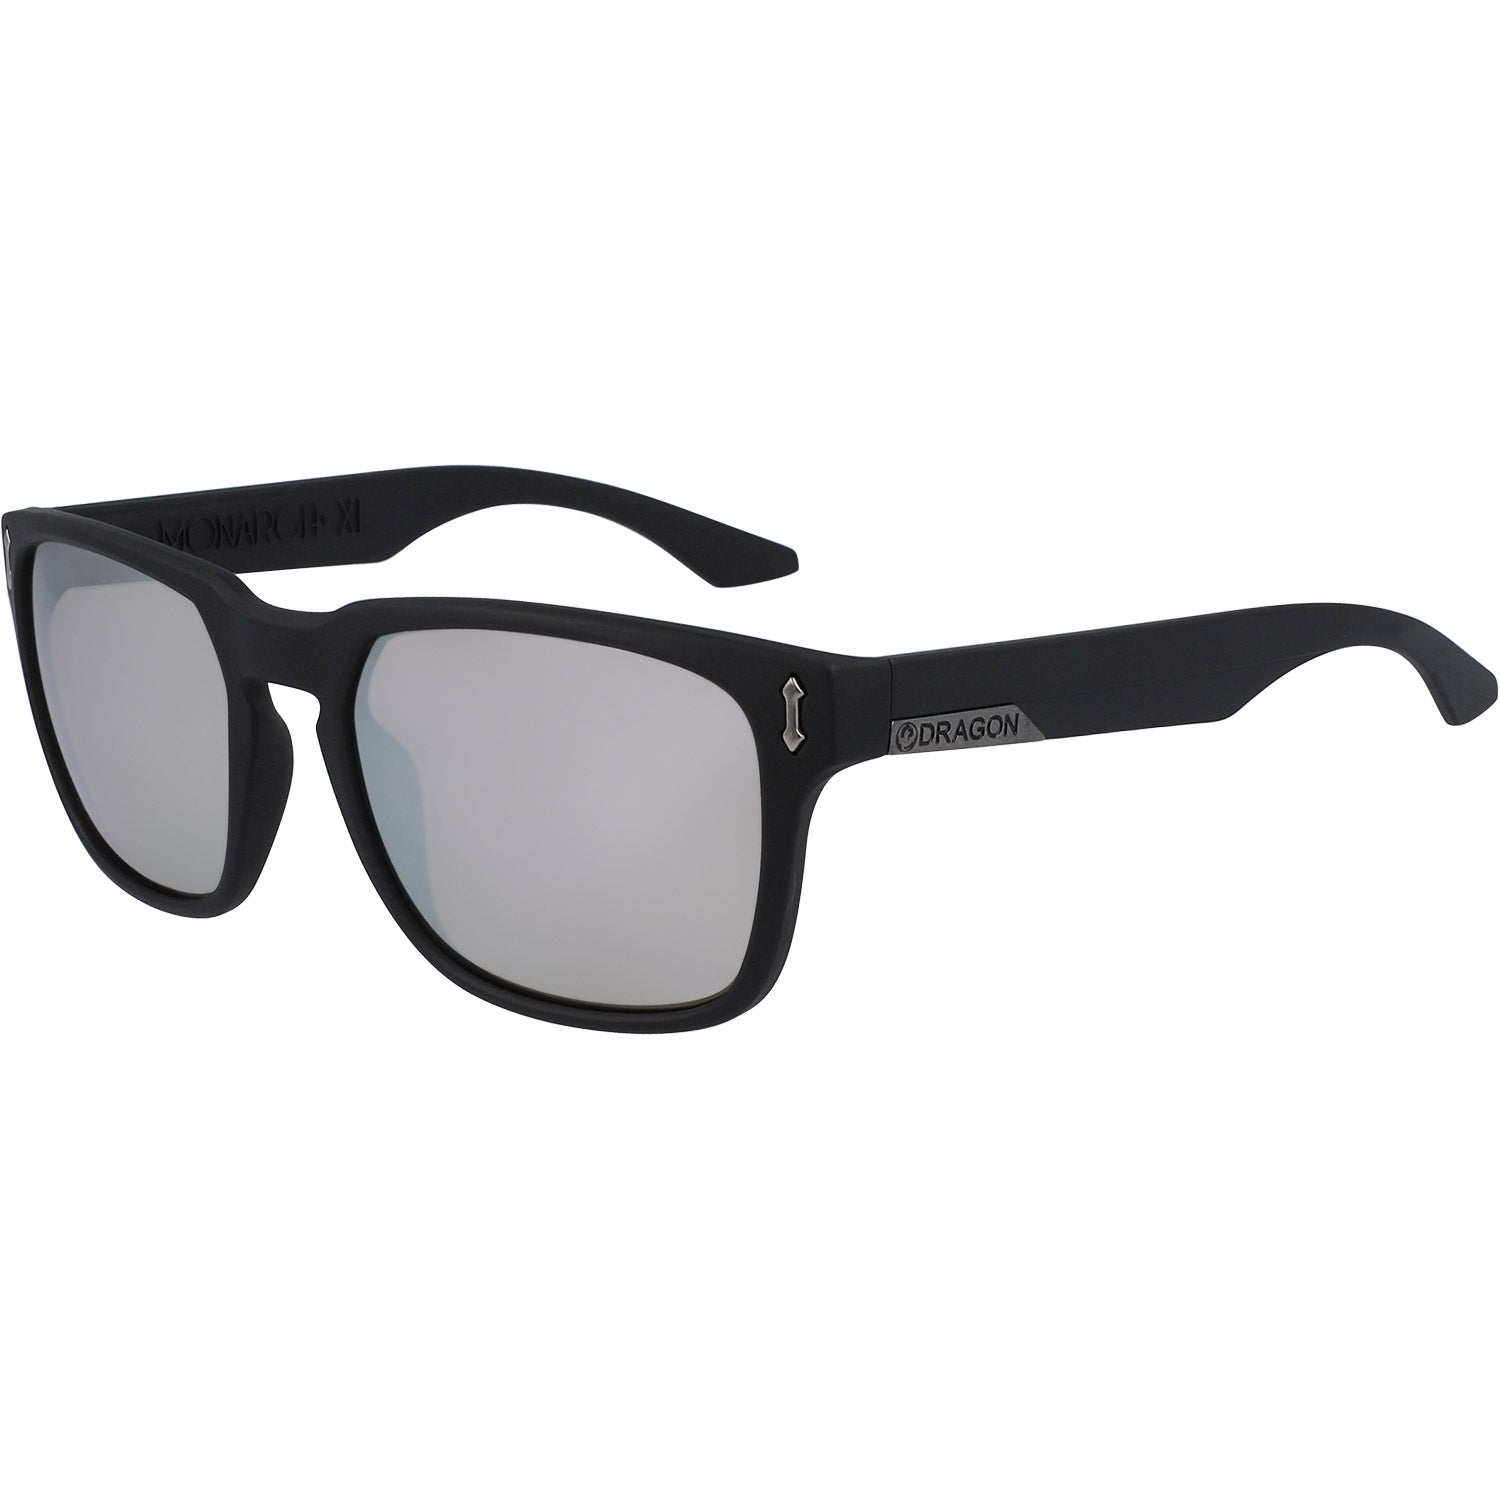 Dragon Monarch XL Sunglasses Matte Black w/ Lumalens Silver Ion